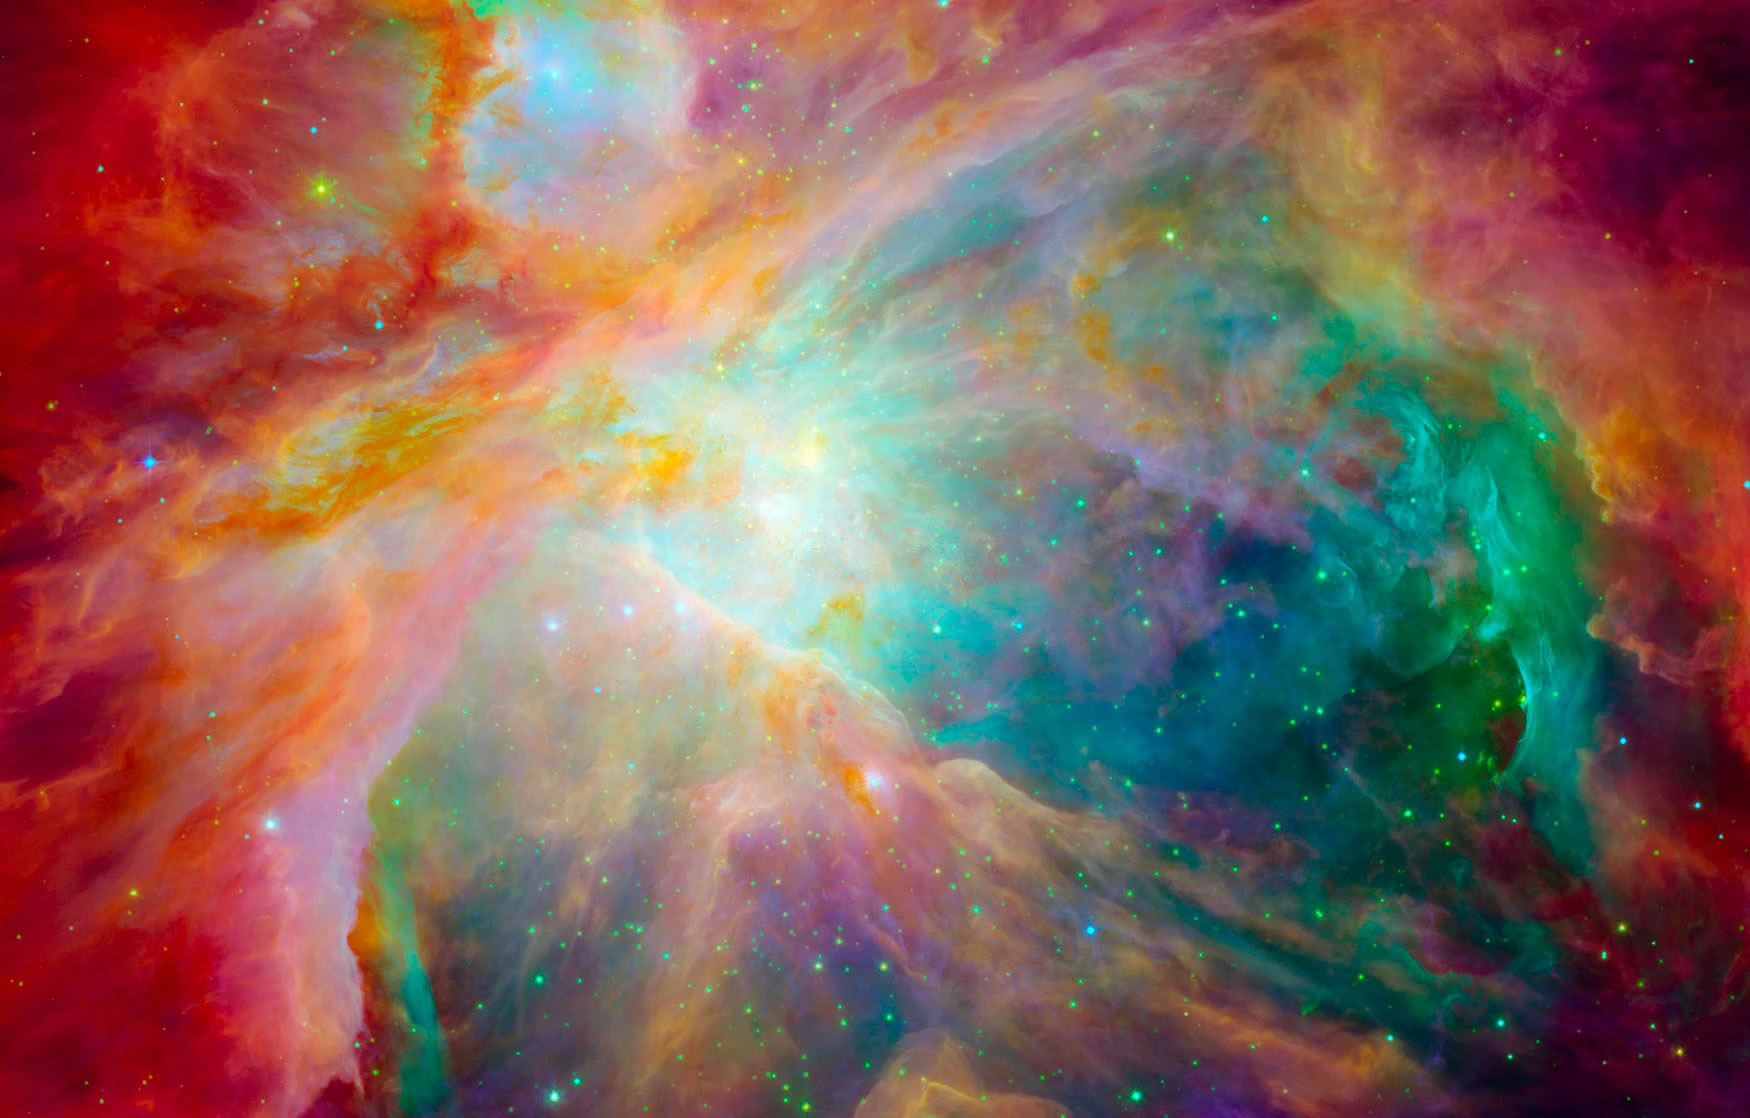 詹姆斯·韦伯太空望远镜拍摄的猎户座星云